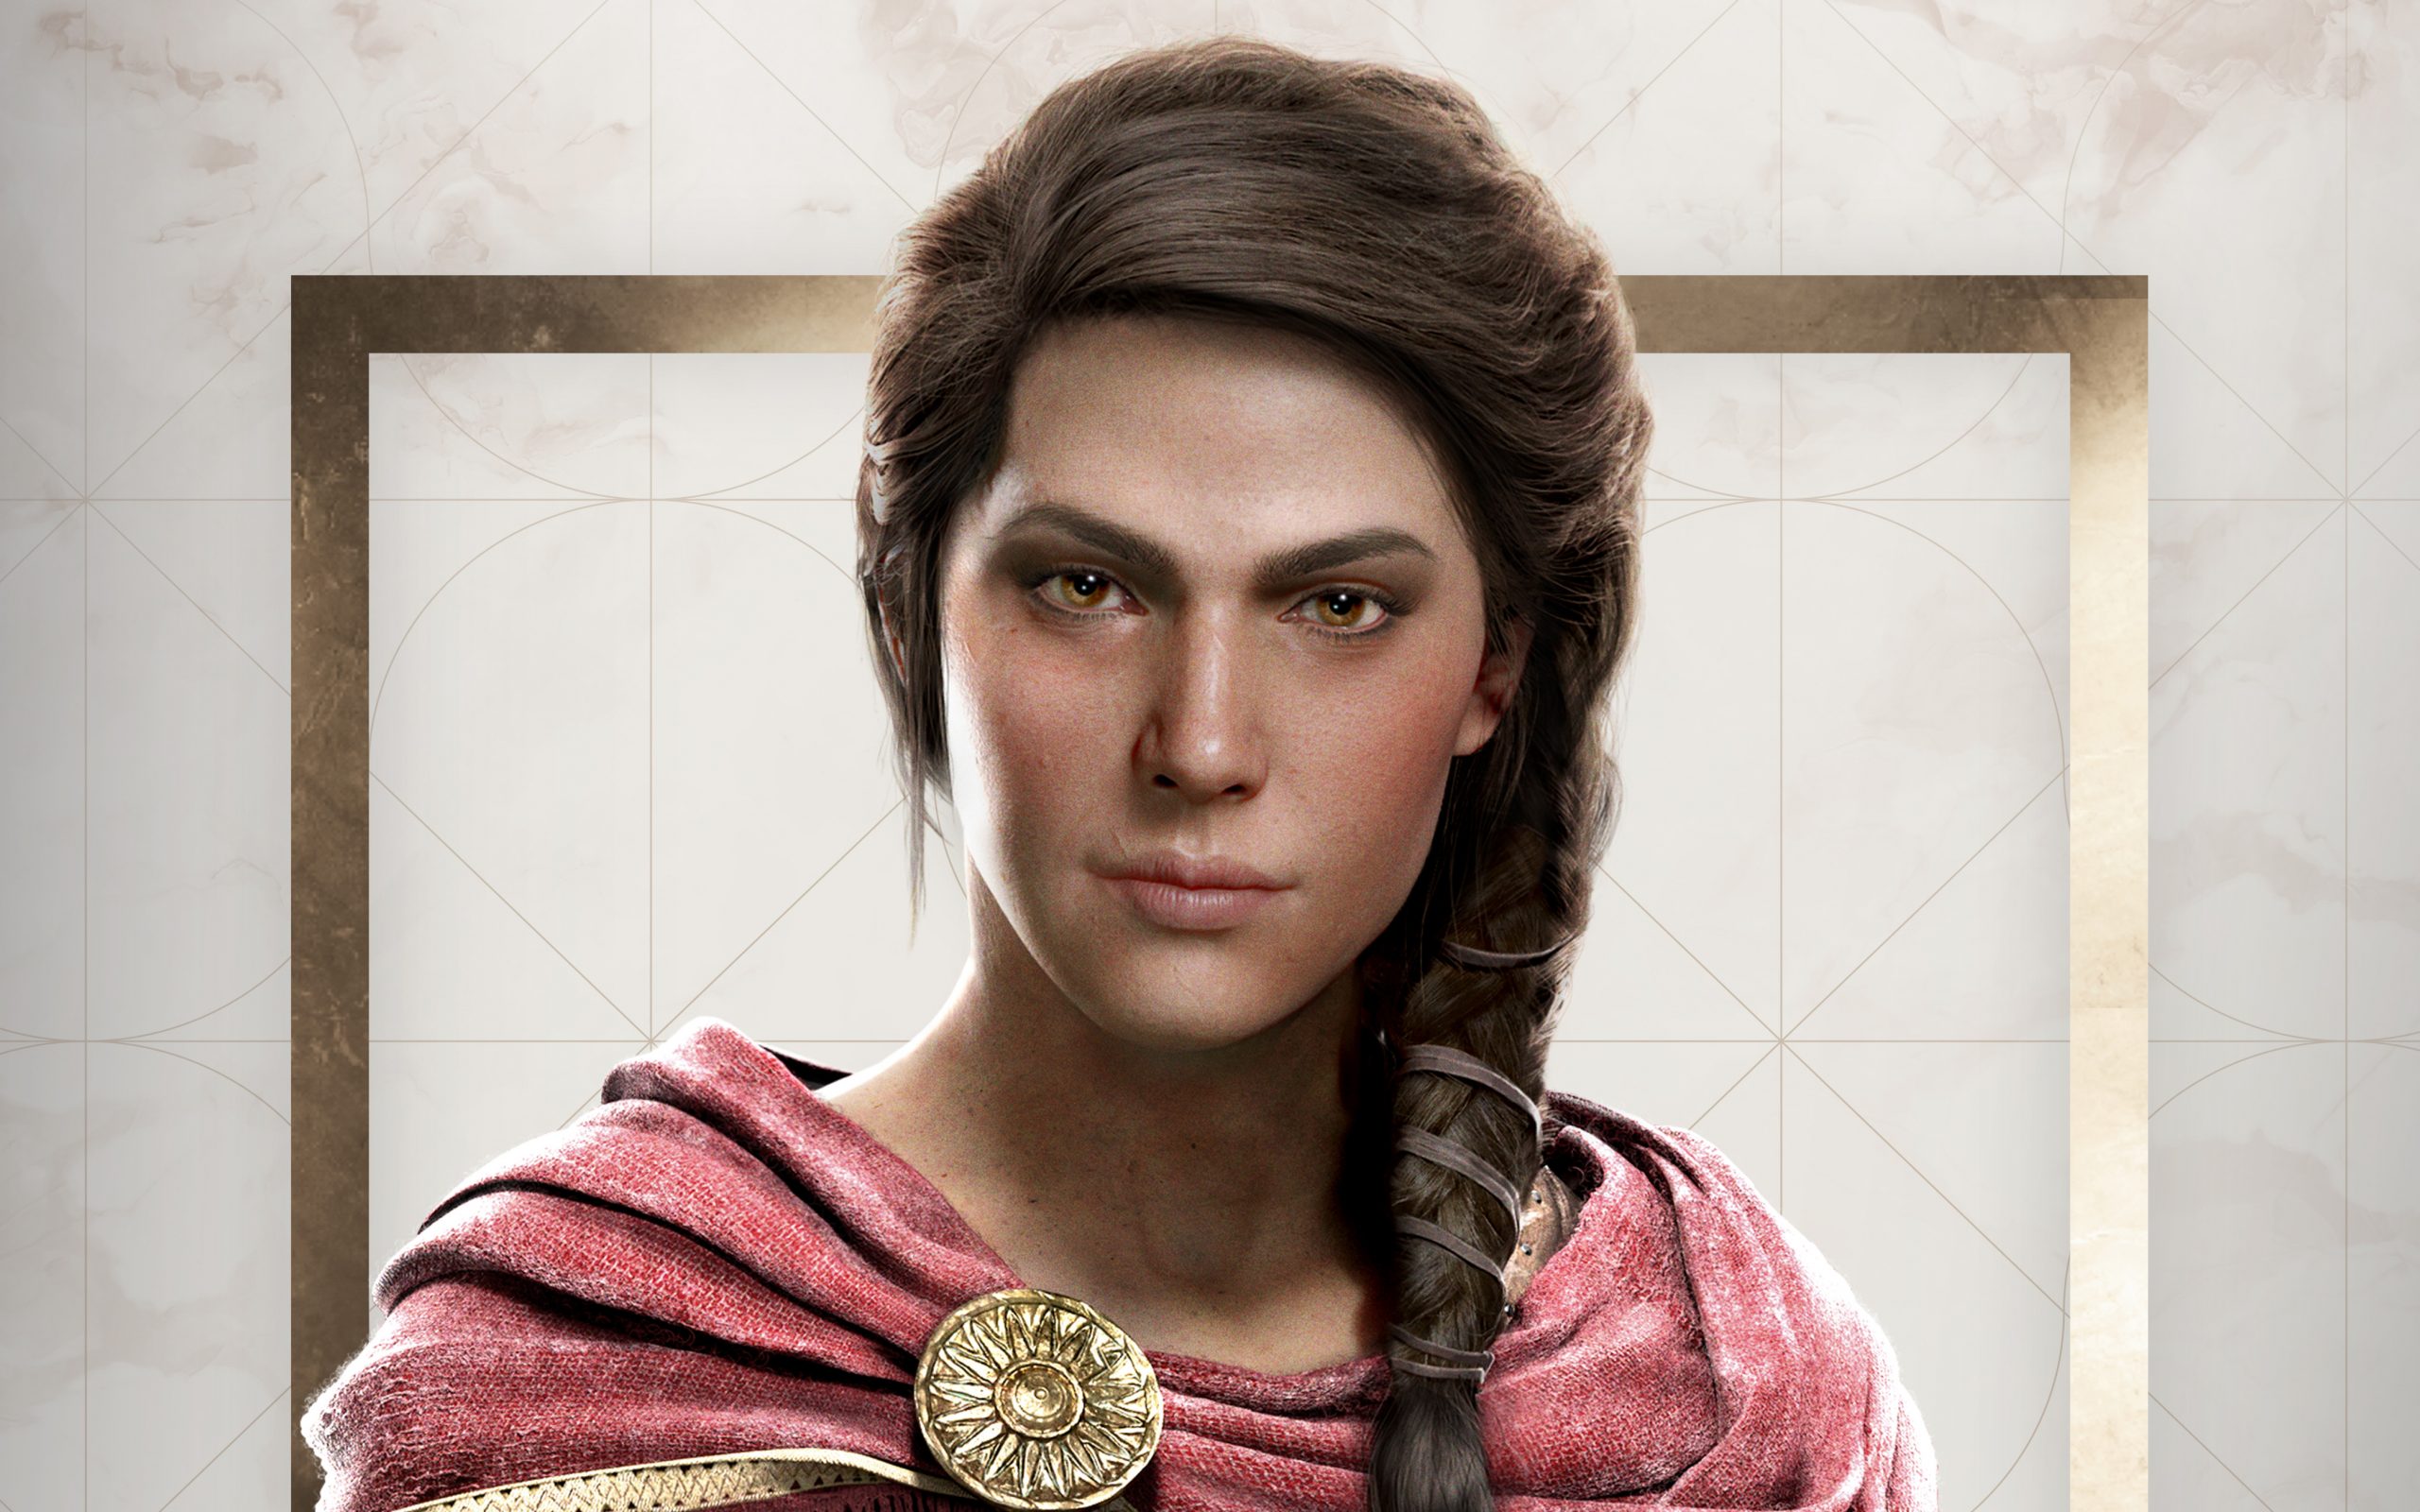 Kassandra Assassin's Creed Odyssey 4K Wallpaper